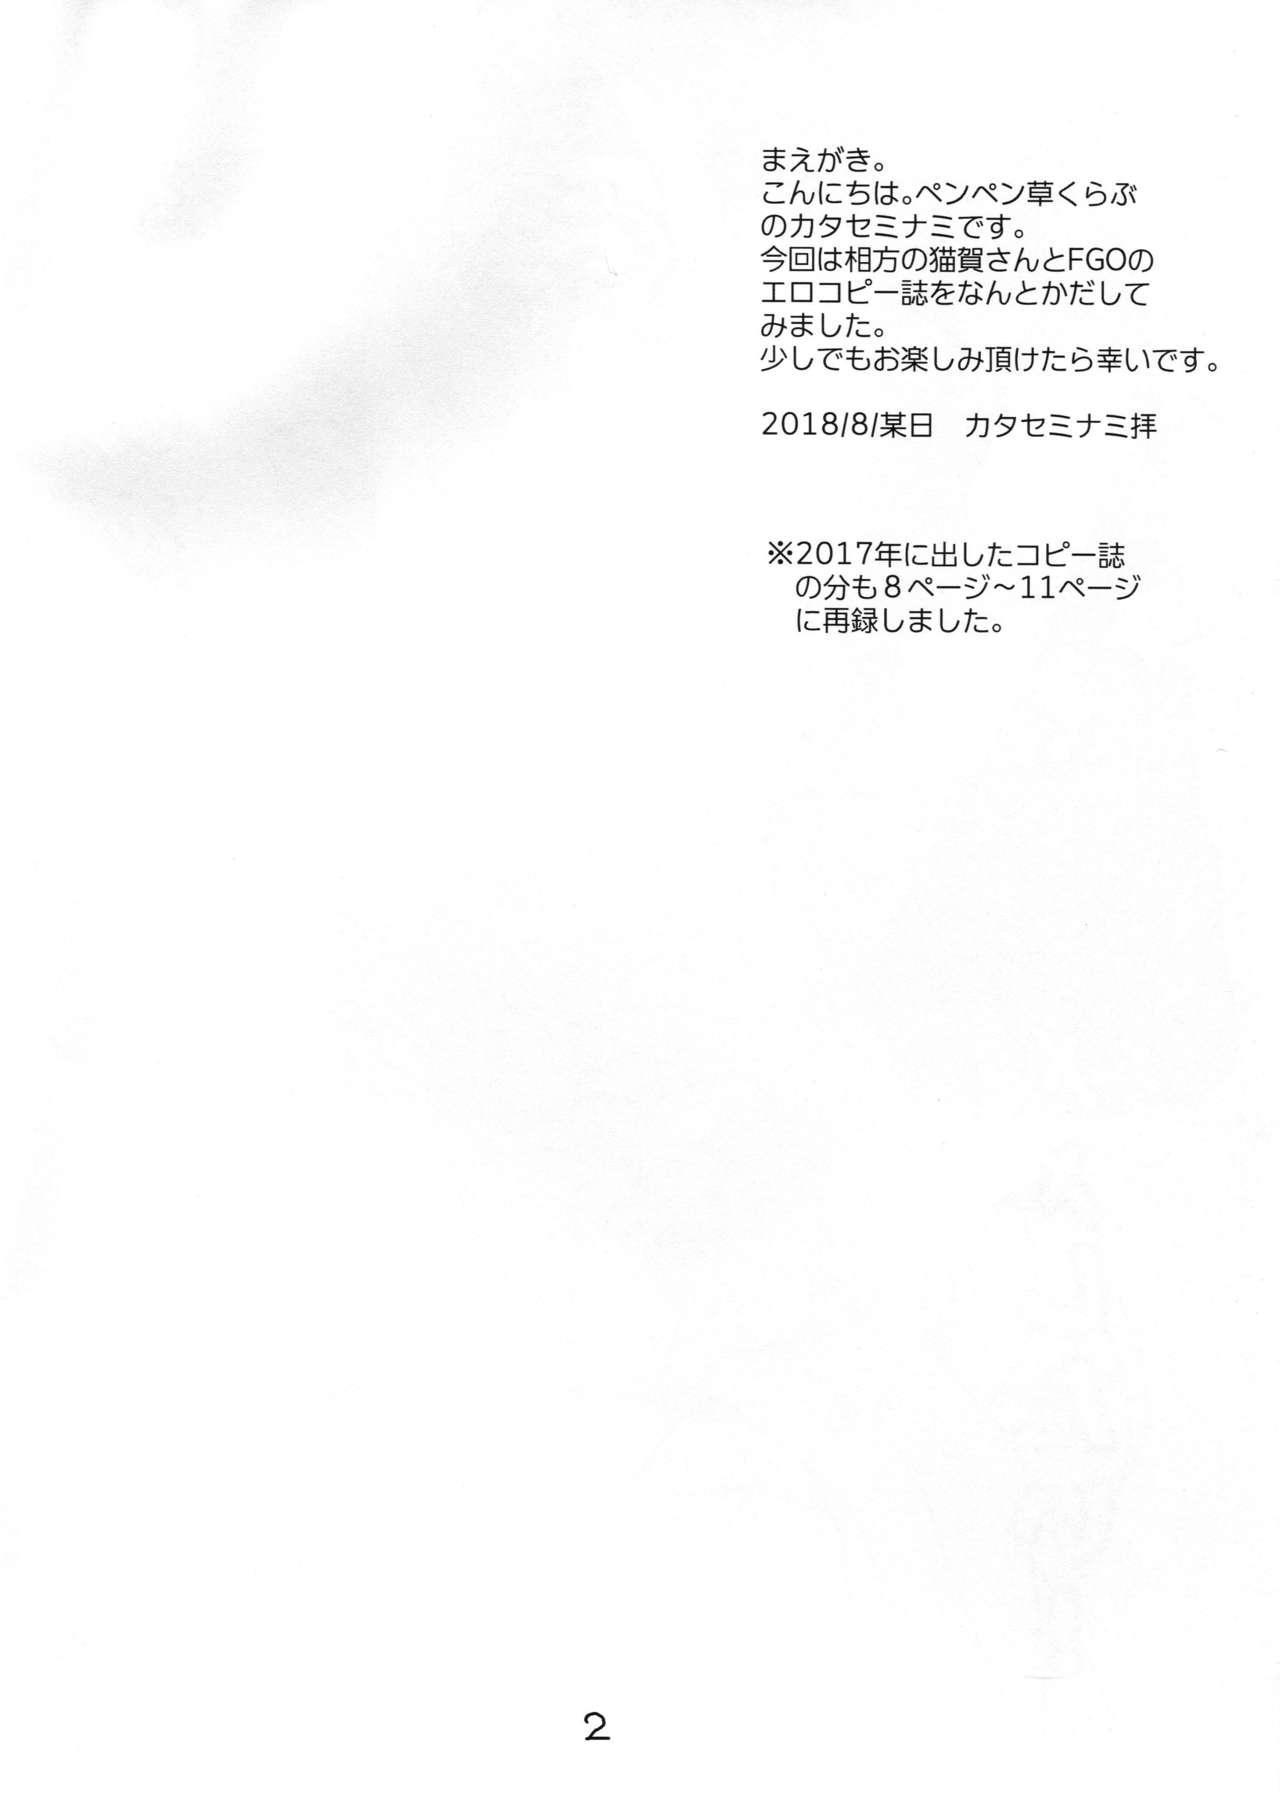 4some Mizugi no anoko to ×× shitai! - Fate grand order College - Page 2